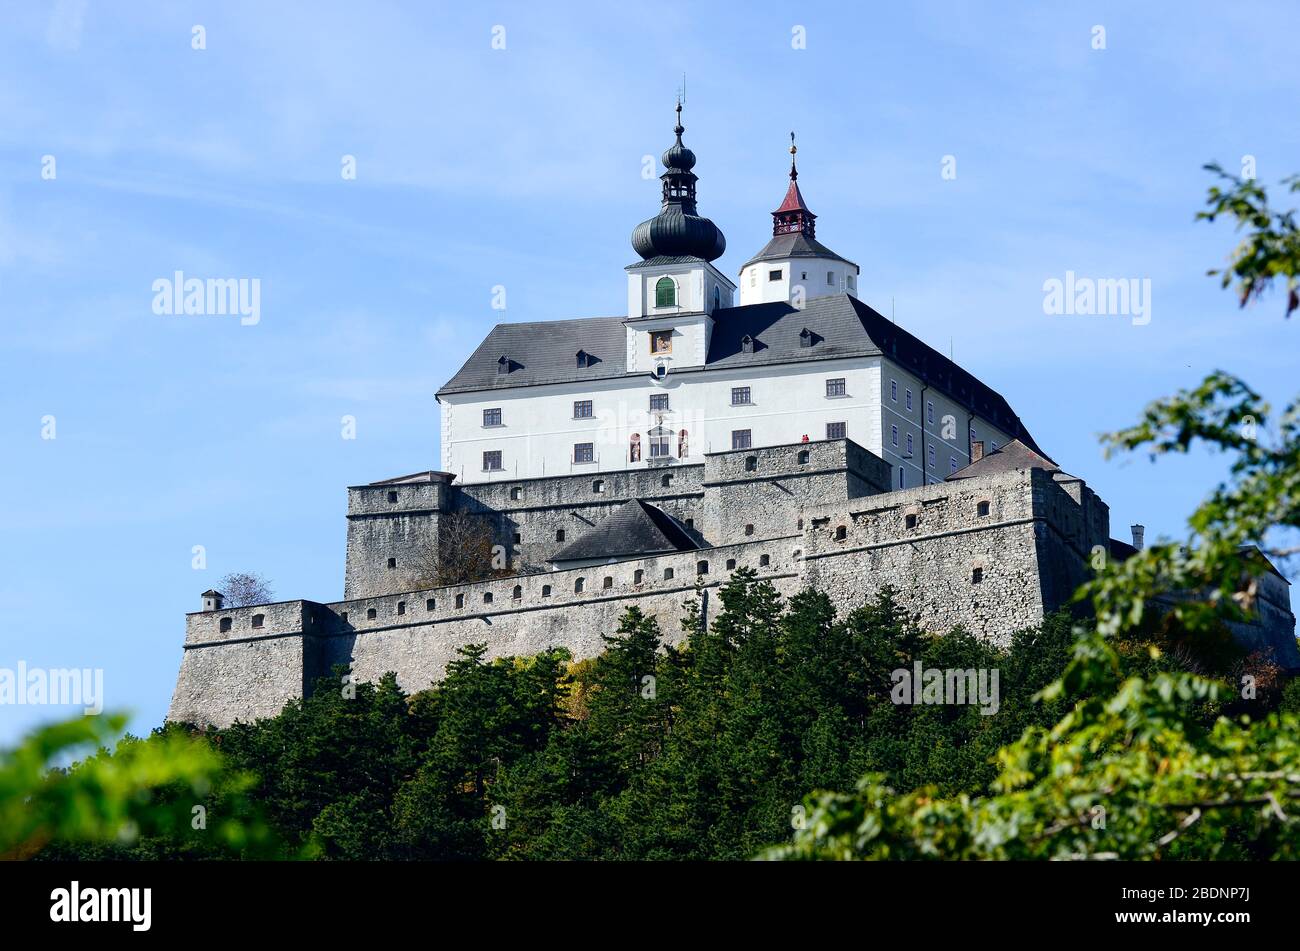 Austria, castle Forchtenstein in Burgenland Stock Photo